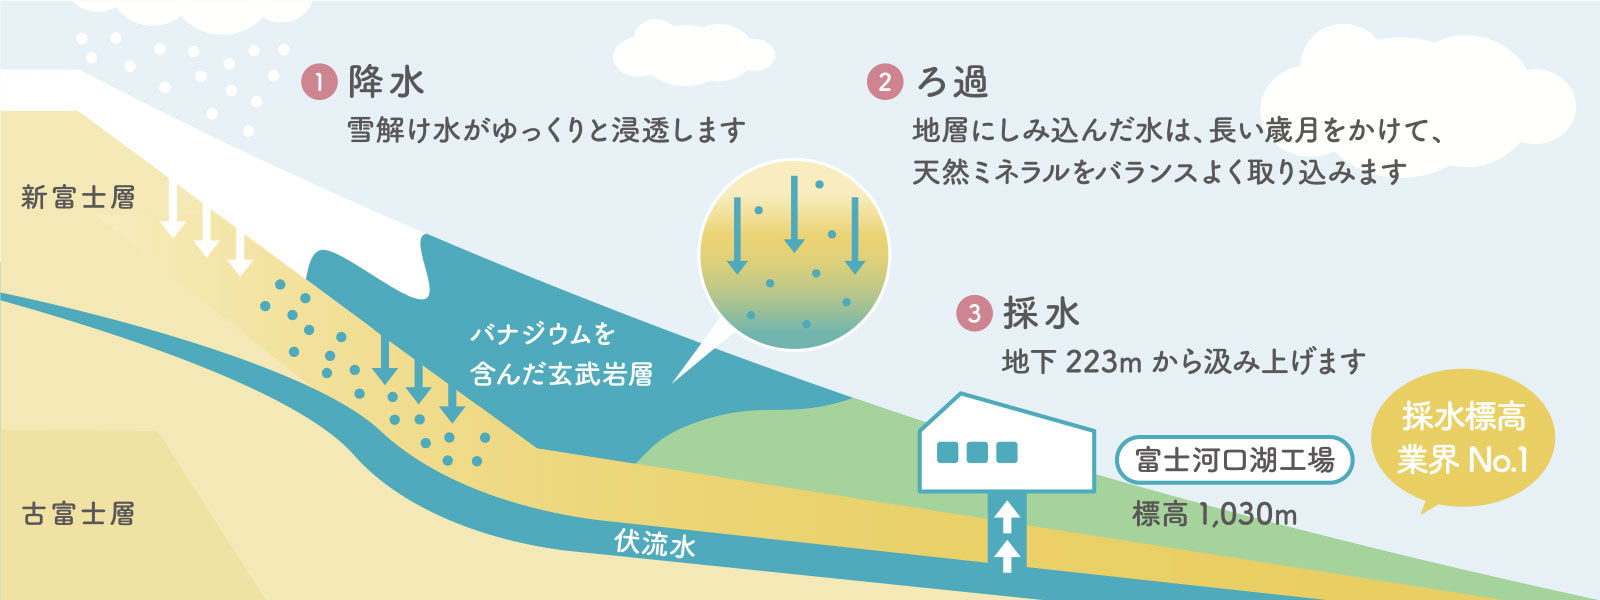 ウォーターサーバーならマーキュロップ富士山の天然水